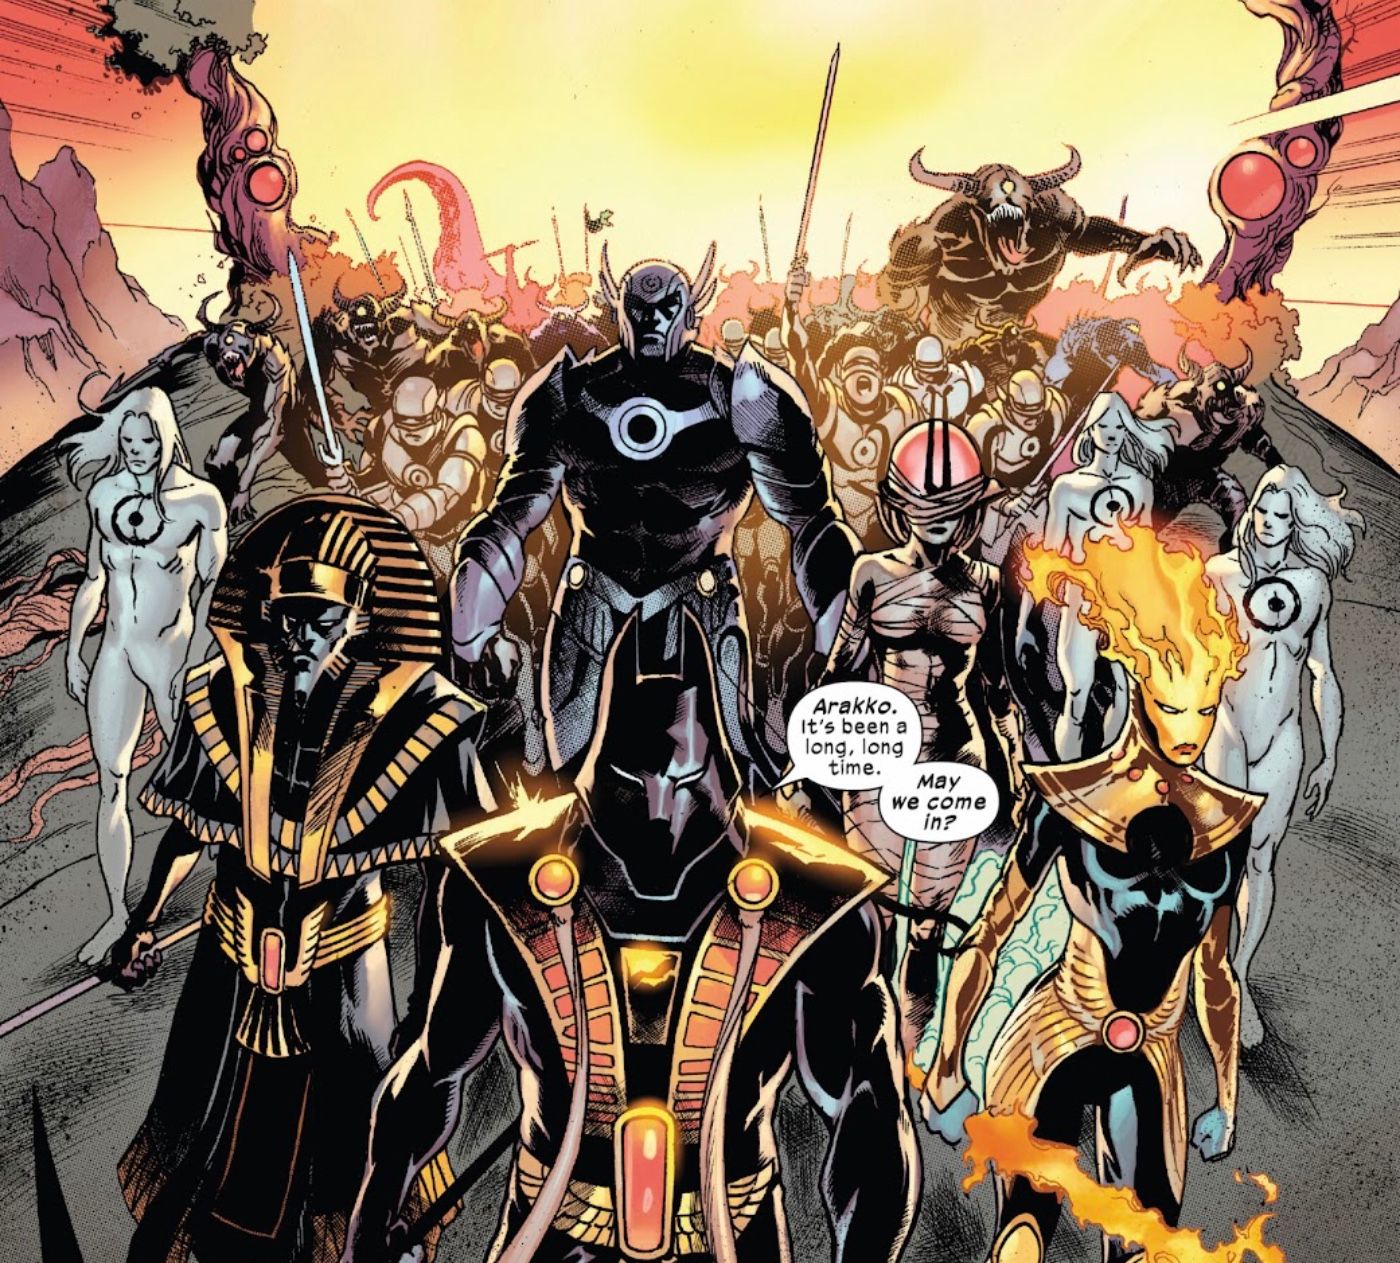 Wolverine Meets His Match as White Sword Rejoins Marvel’s X-Men Battle Against Genesis!